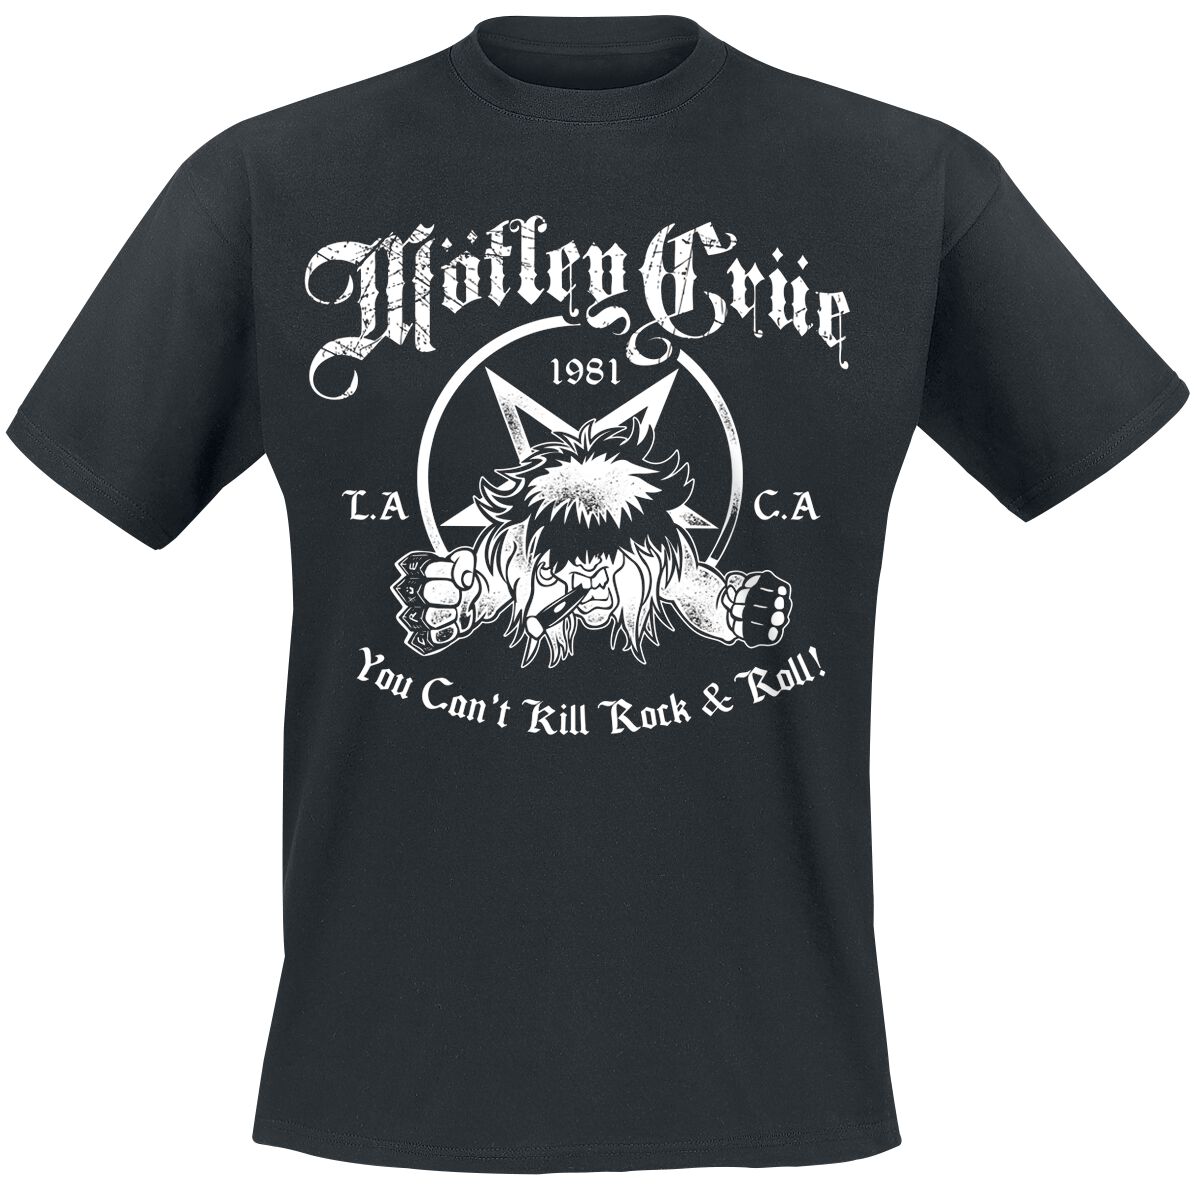 Mötley Crüe T-Shirt - You Can`t Kill Rock`n Roll - S bis XXL - für Männer - Größe S - schwarz  - Lizenziertes Merchandise!